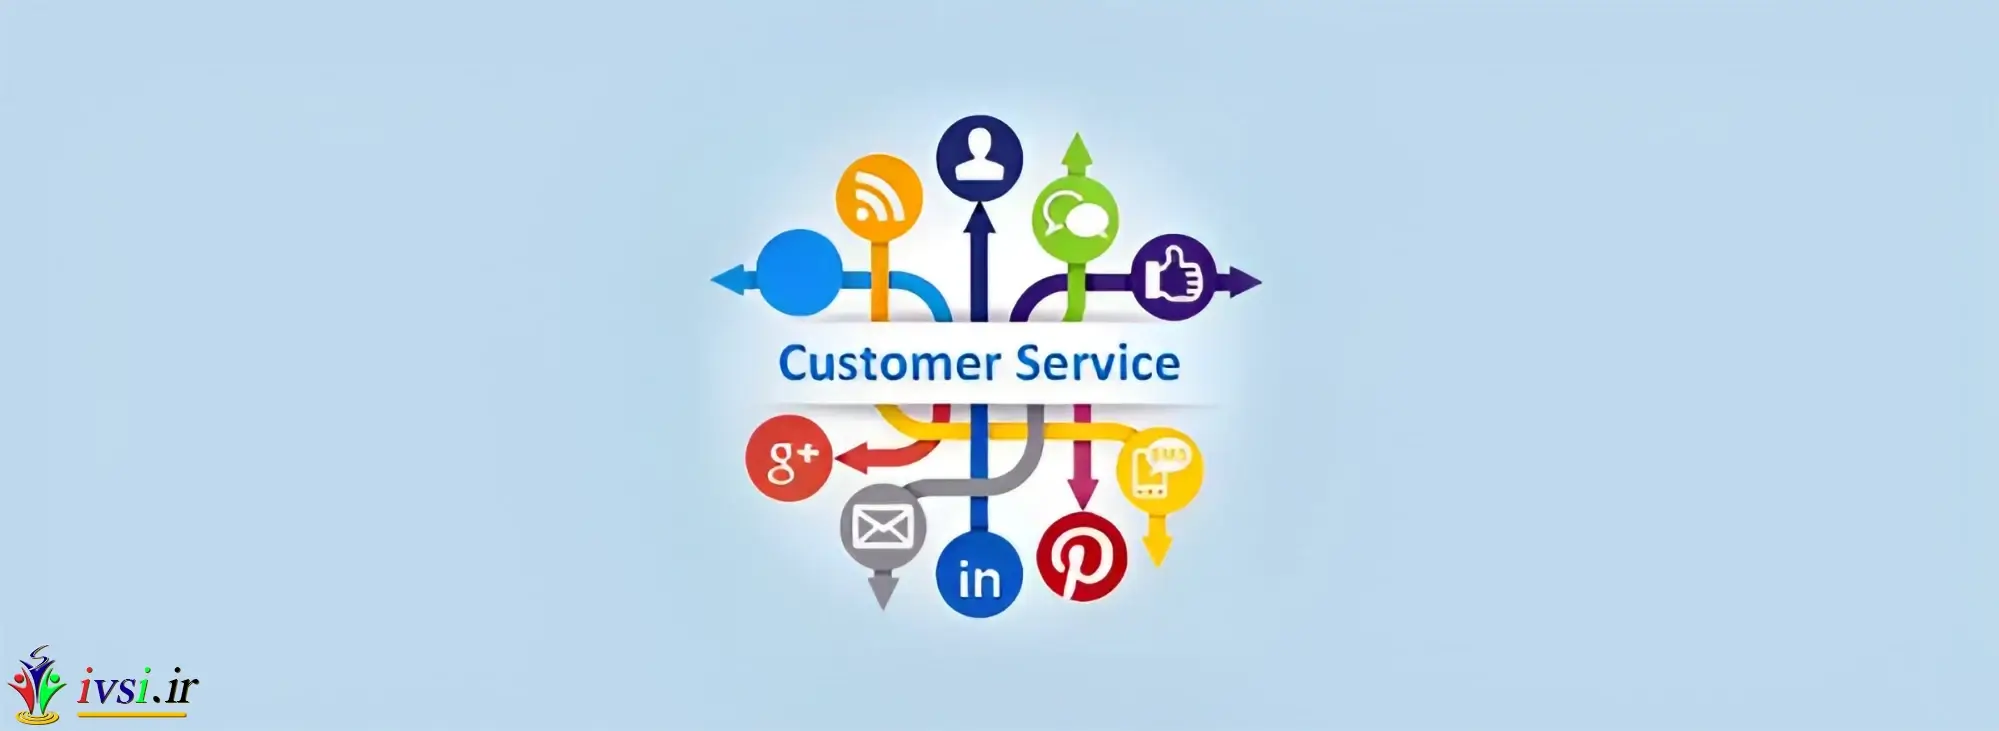 نکاتی برای خدمات مشتری در رسانه های اجتماعی